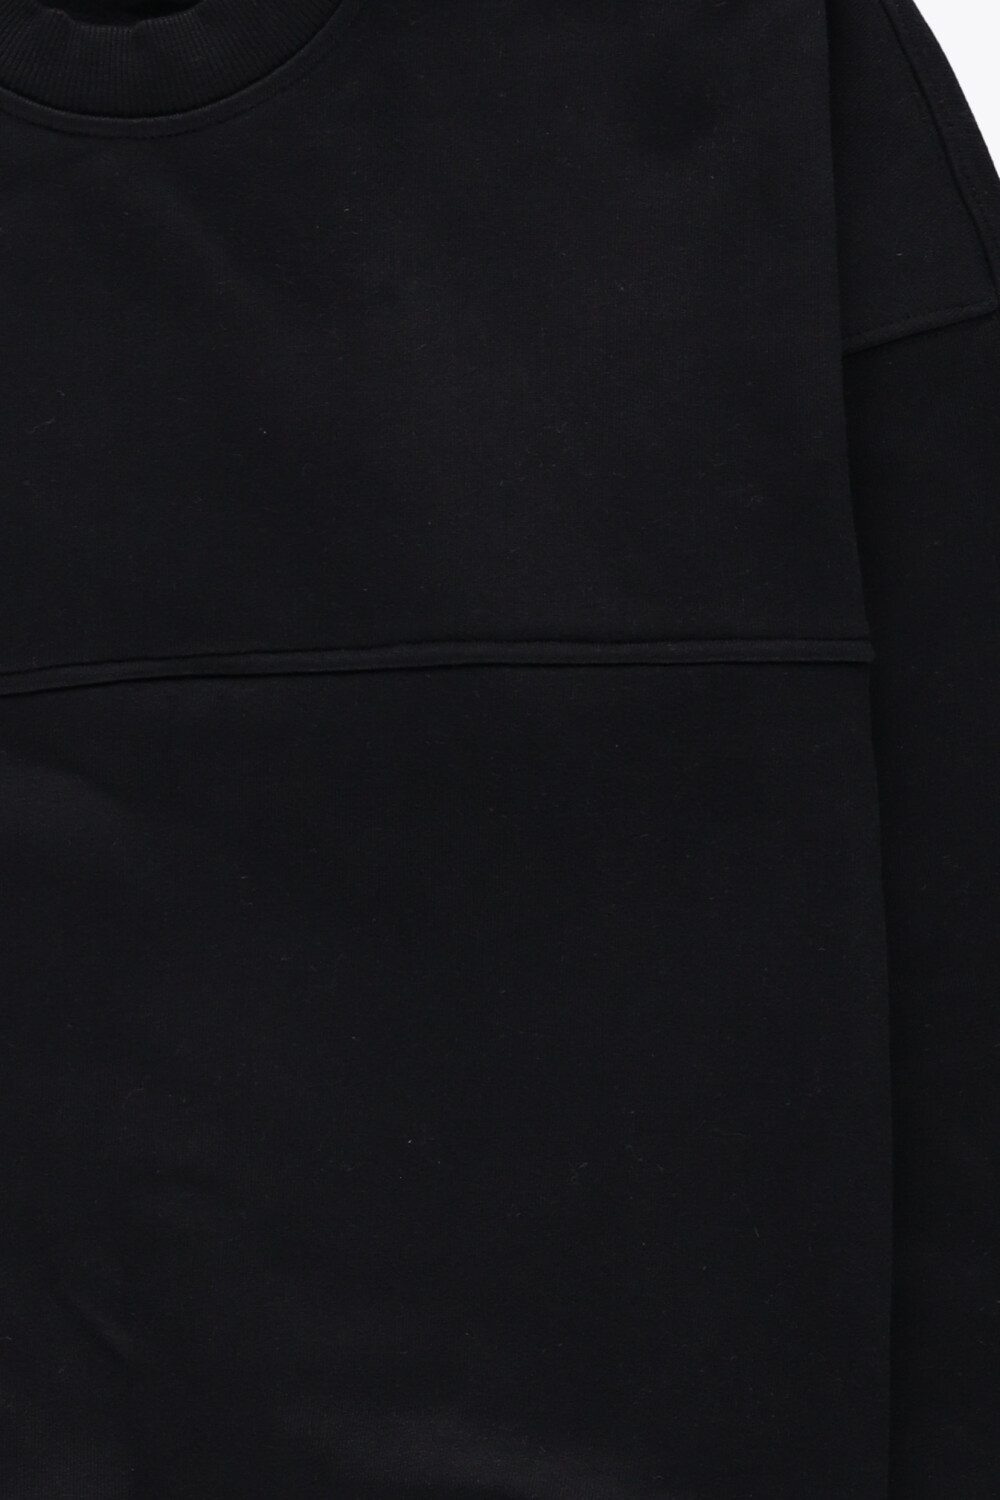 czarna prosta bluza dresowa bawełna 